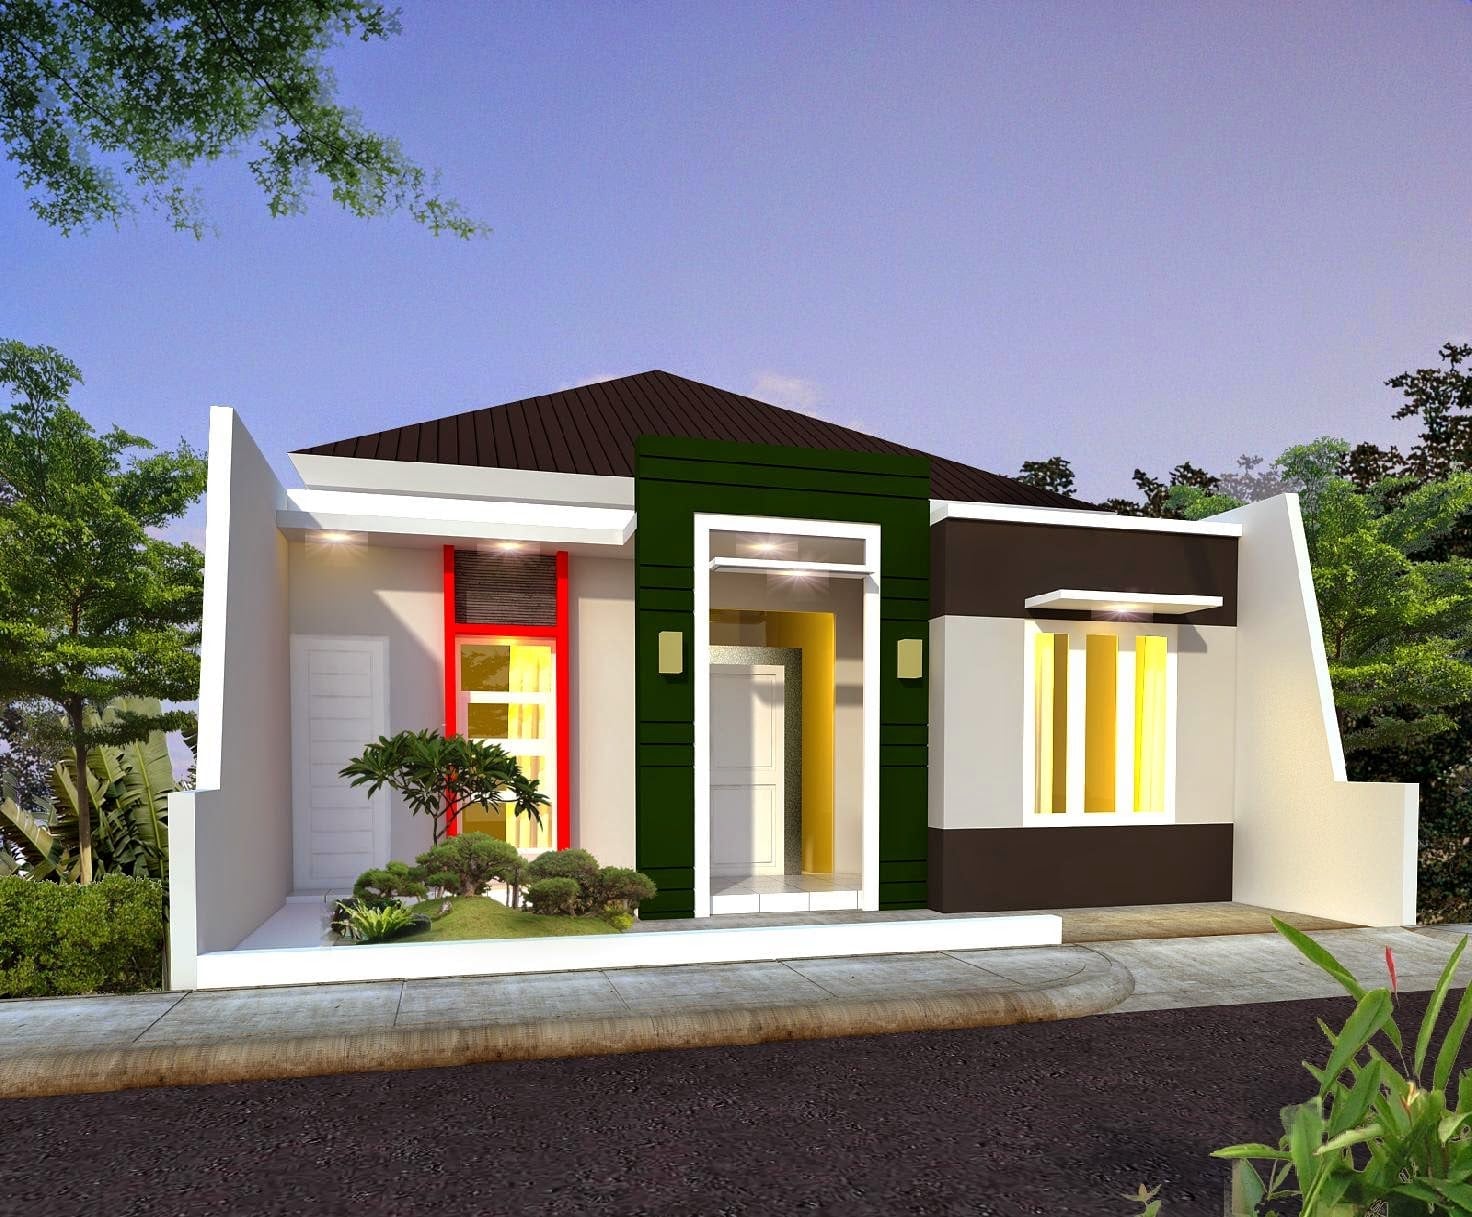 Fancy Desain Rumah Minimalis Yang Terbaru 24 Renovasi Ide Dekorasi Rumah dengan Desain Rumah Minimalis Yang Terbaru